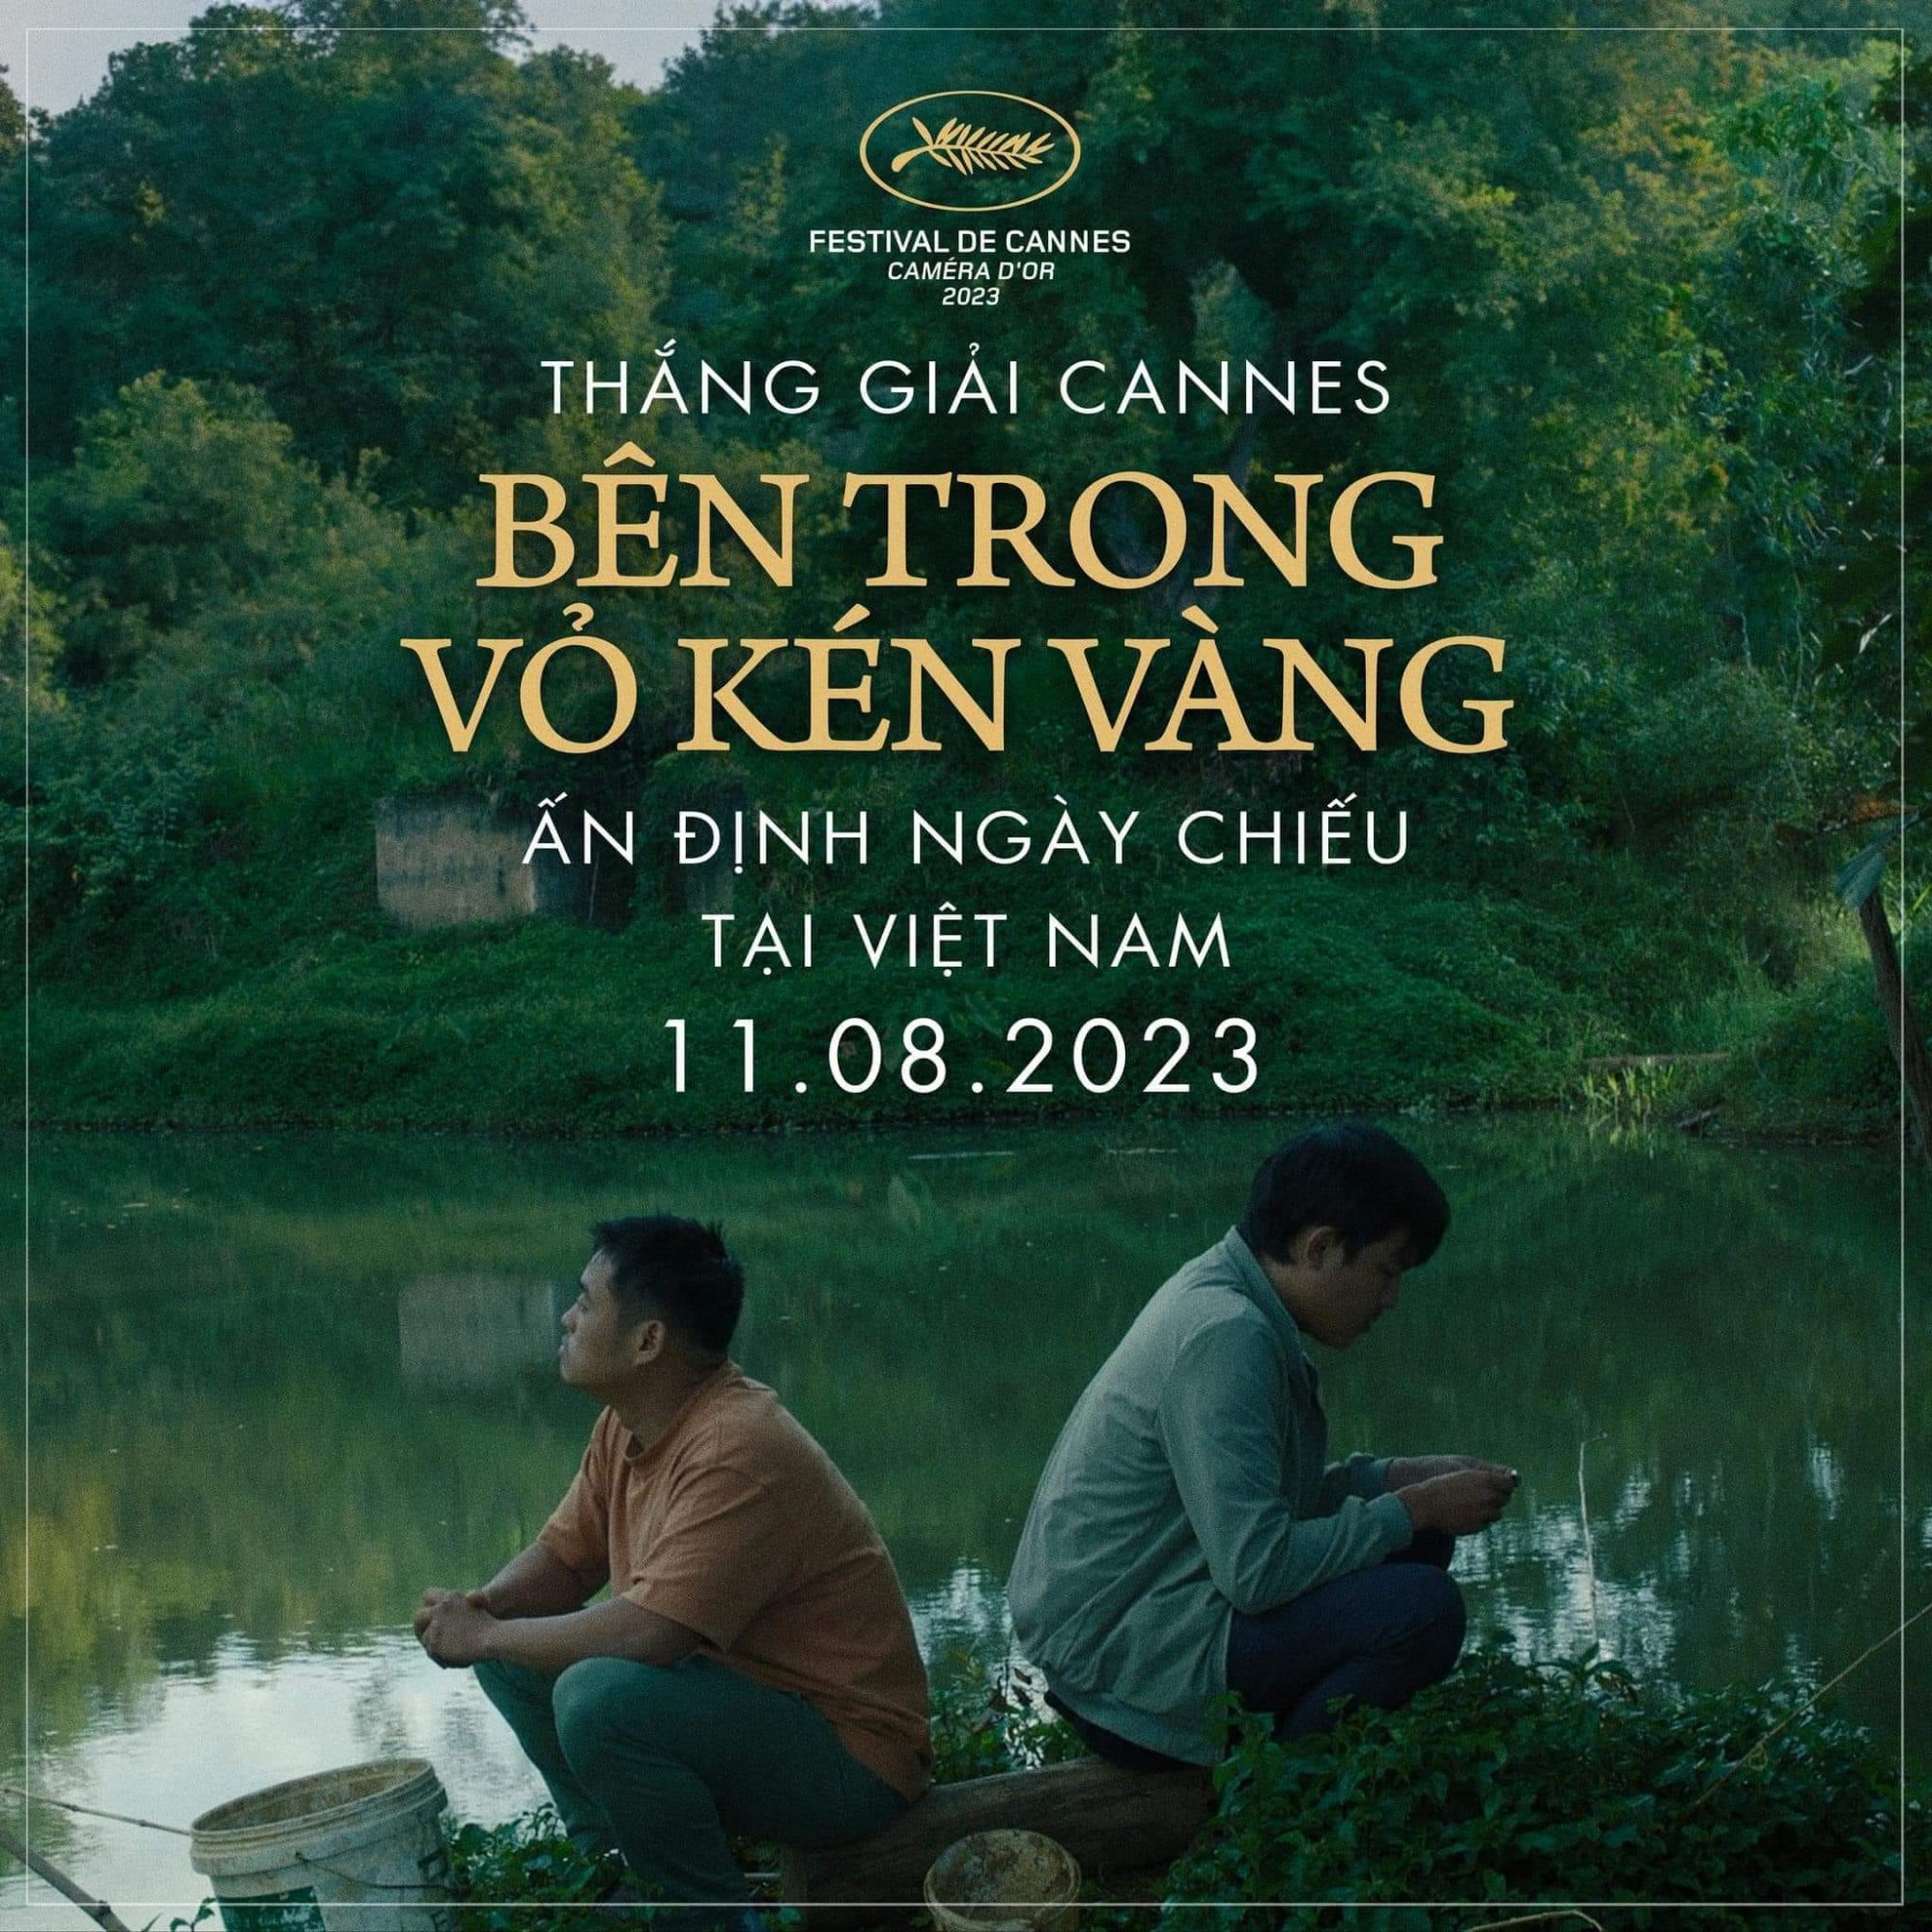 Thông tin về việc phim của Phạm Thiên Ân được chiếu tại Việt Nam được chia sẻ rộng rãi trên mạng xã hội